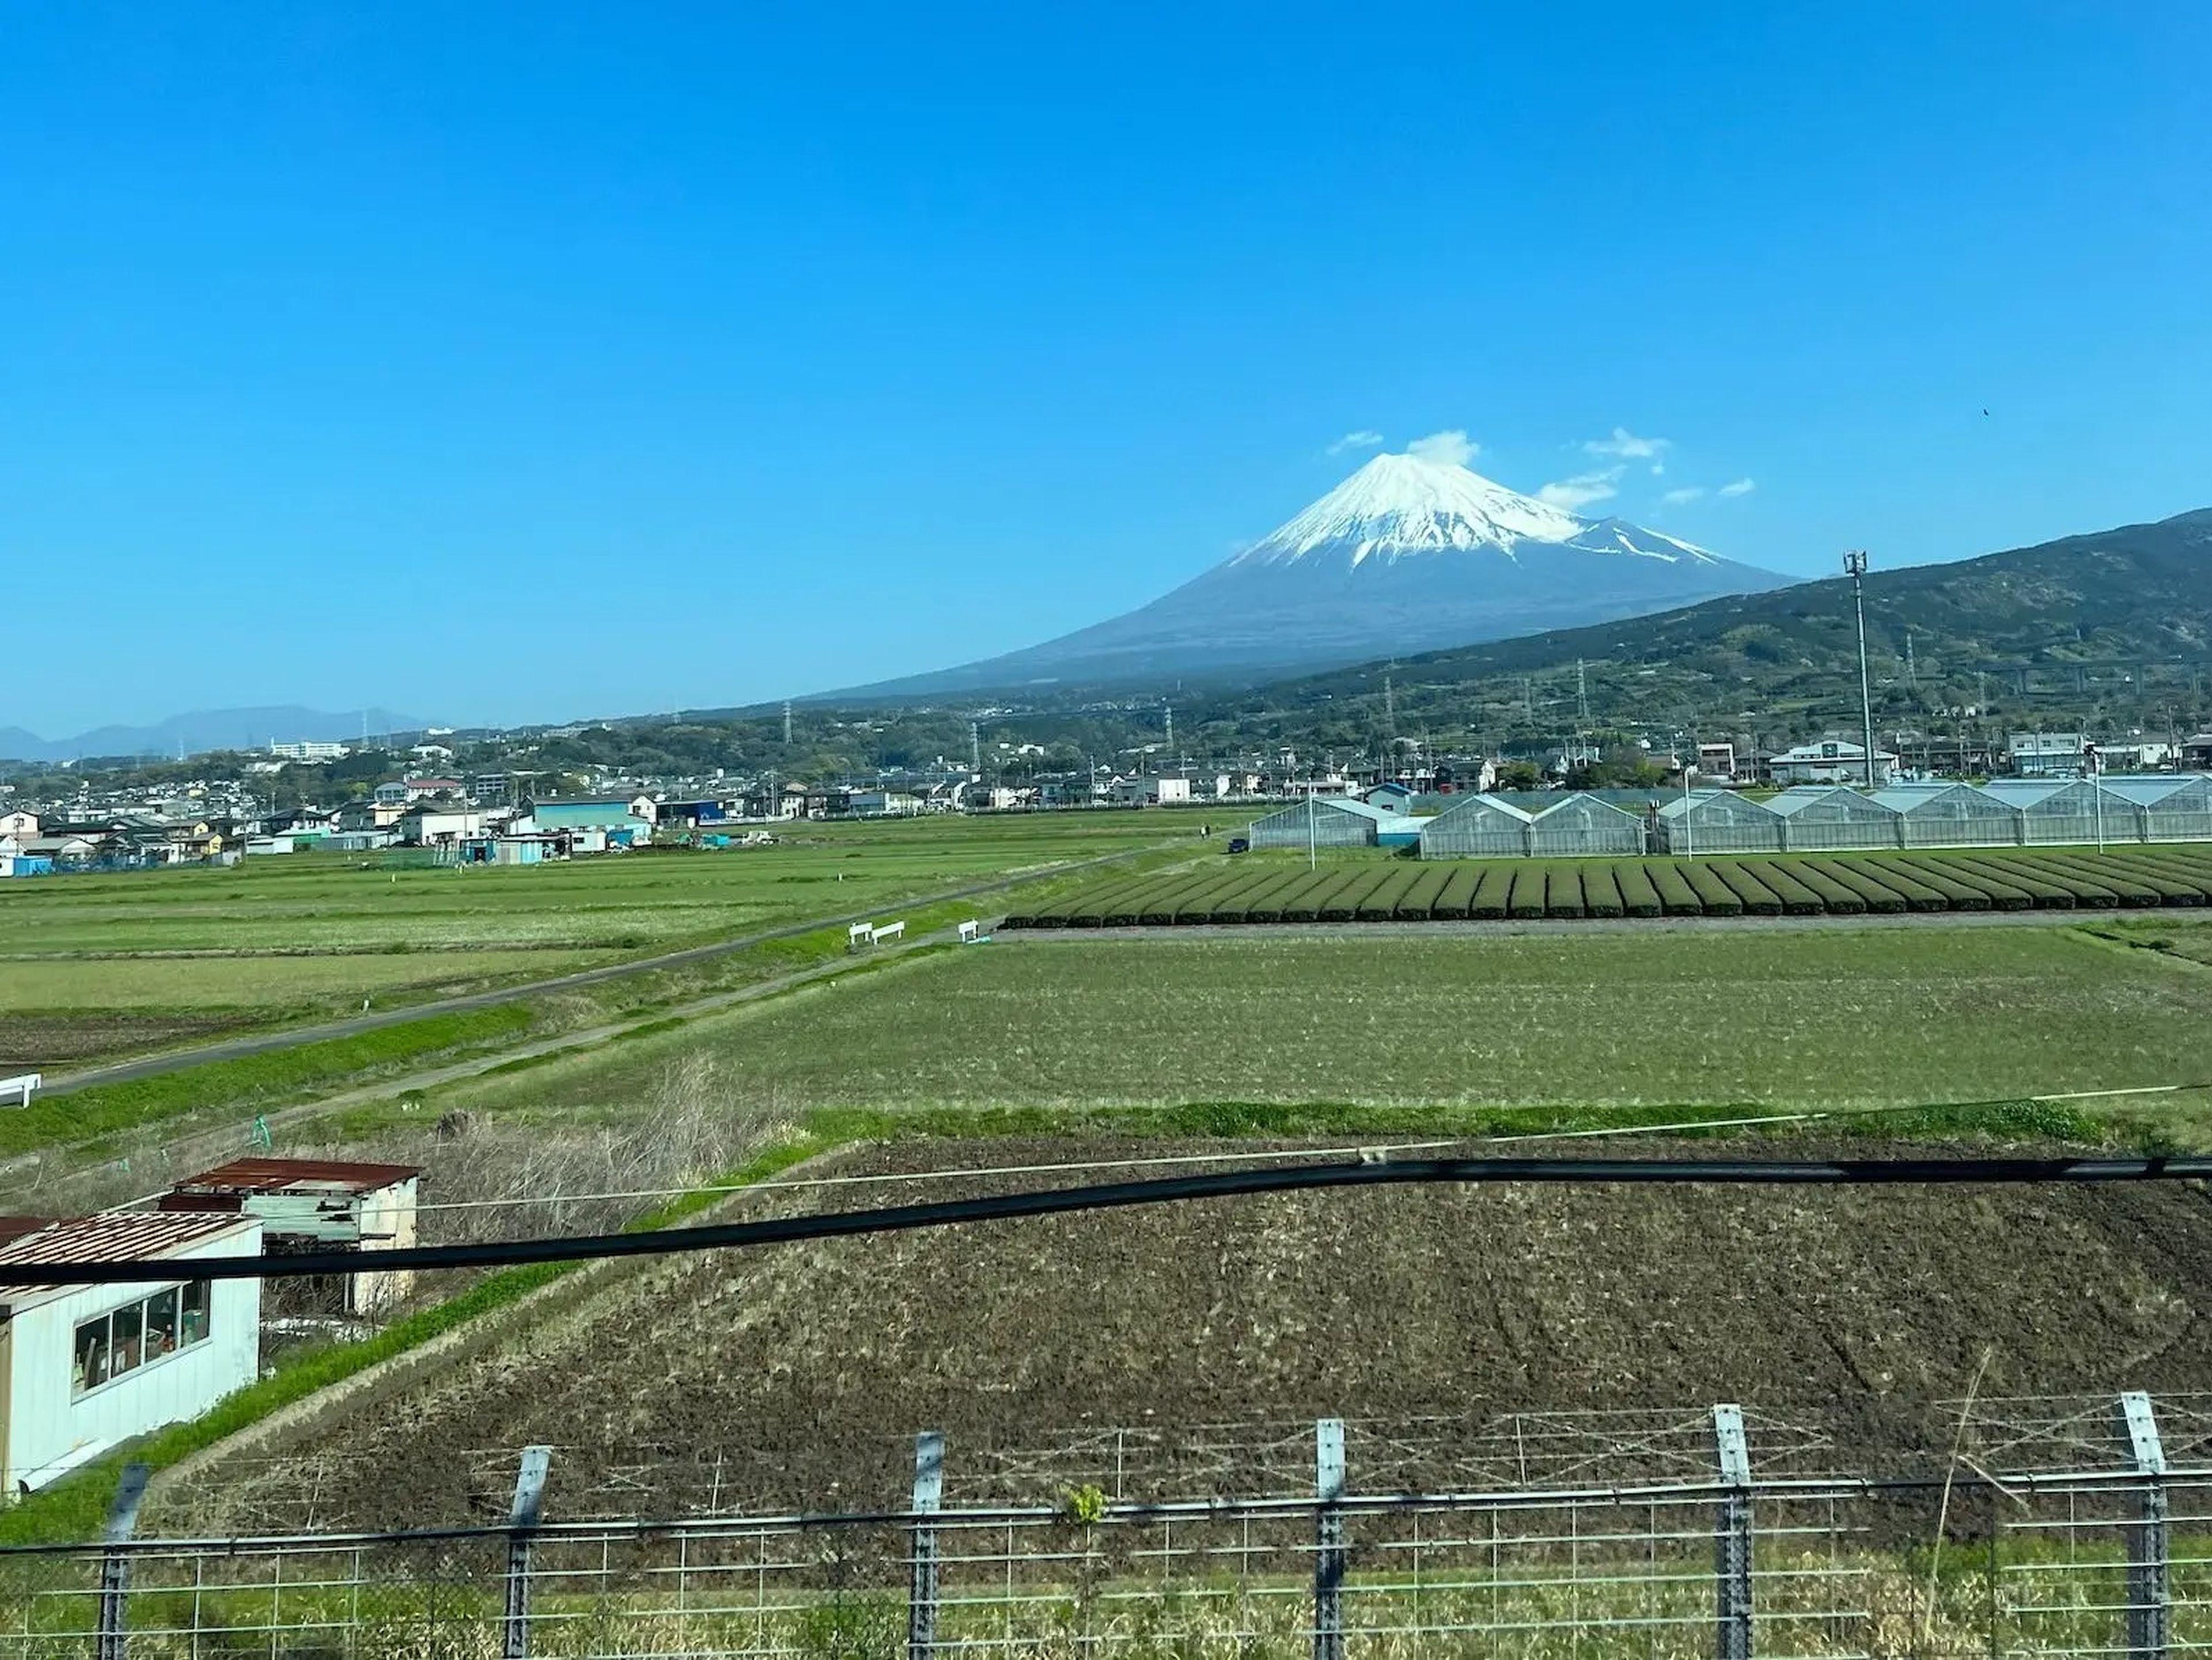 Podíamos ver todo el monte Fuji desde el tren.